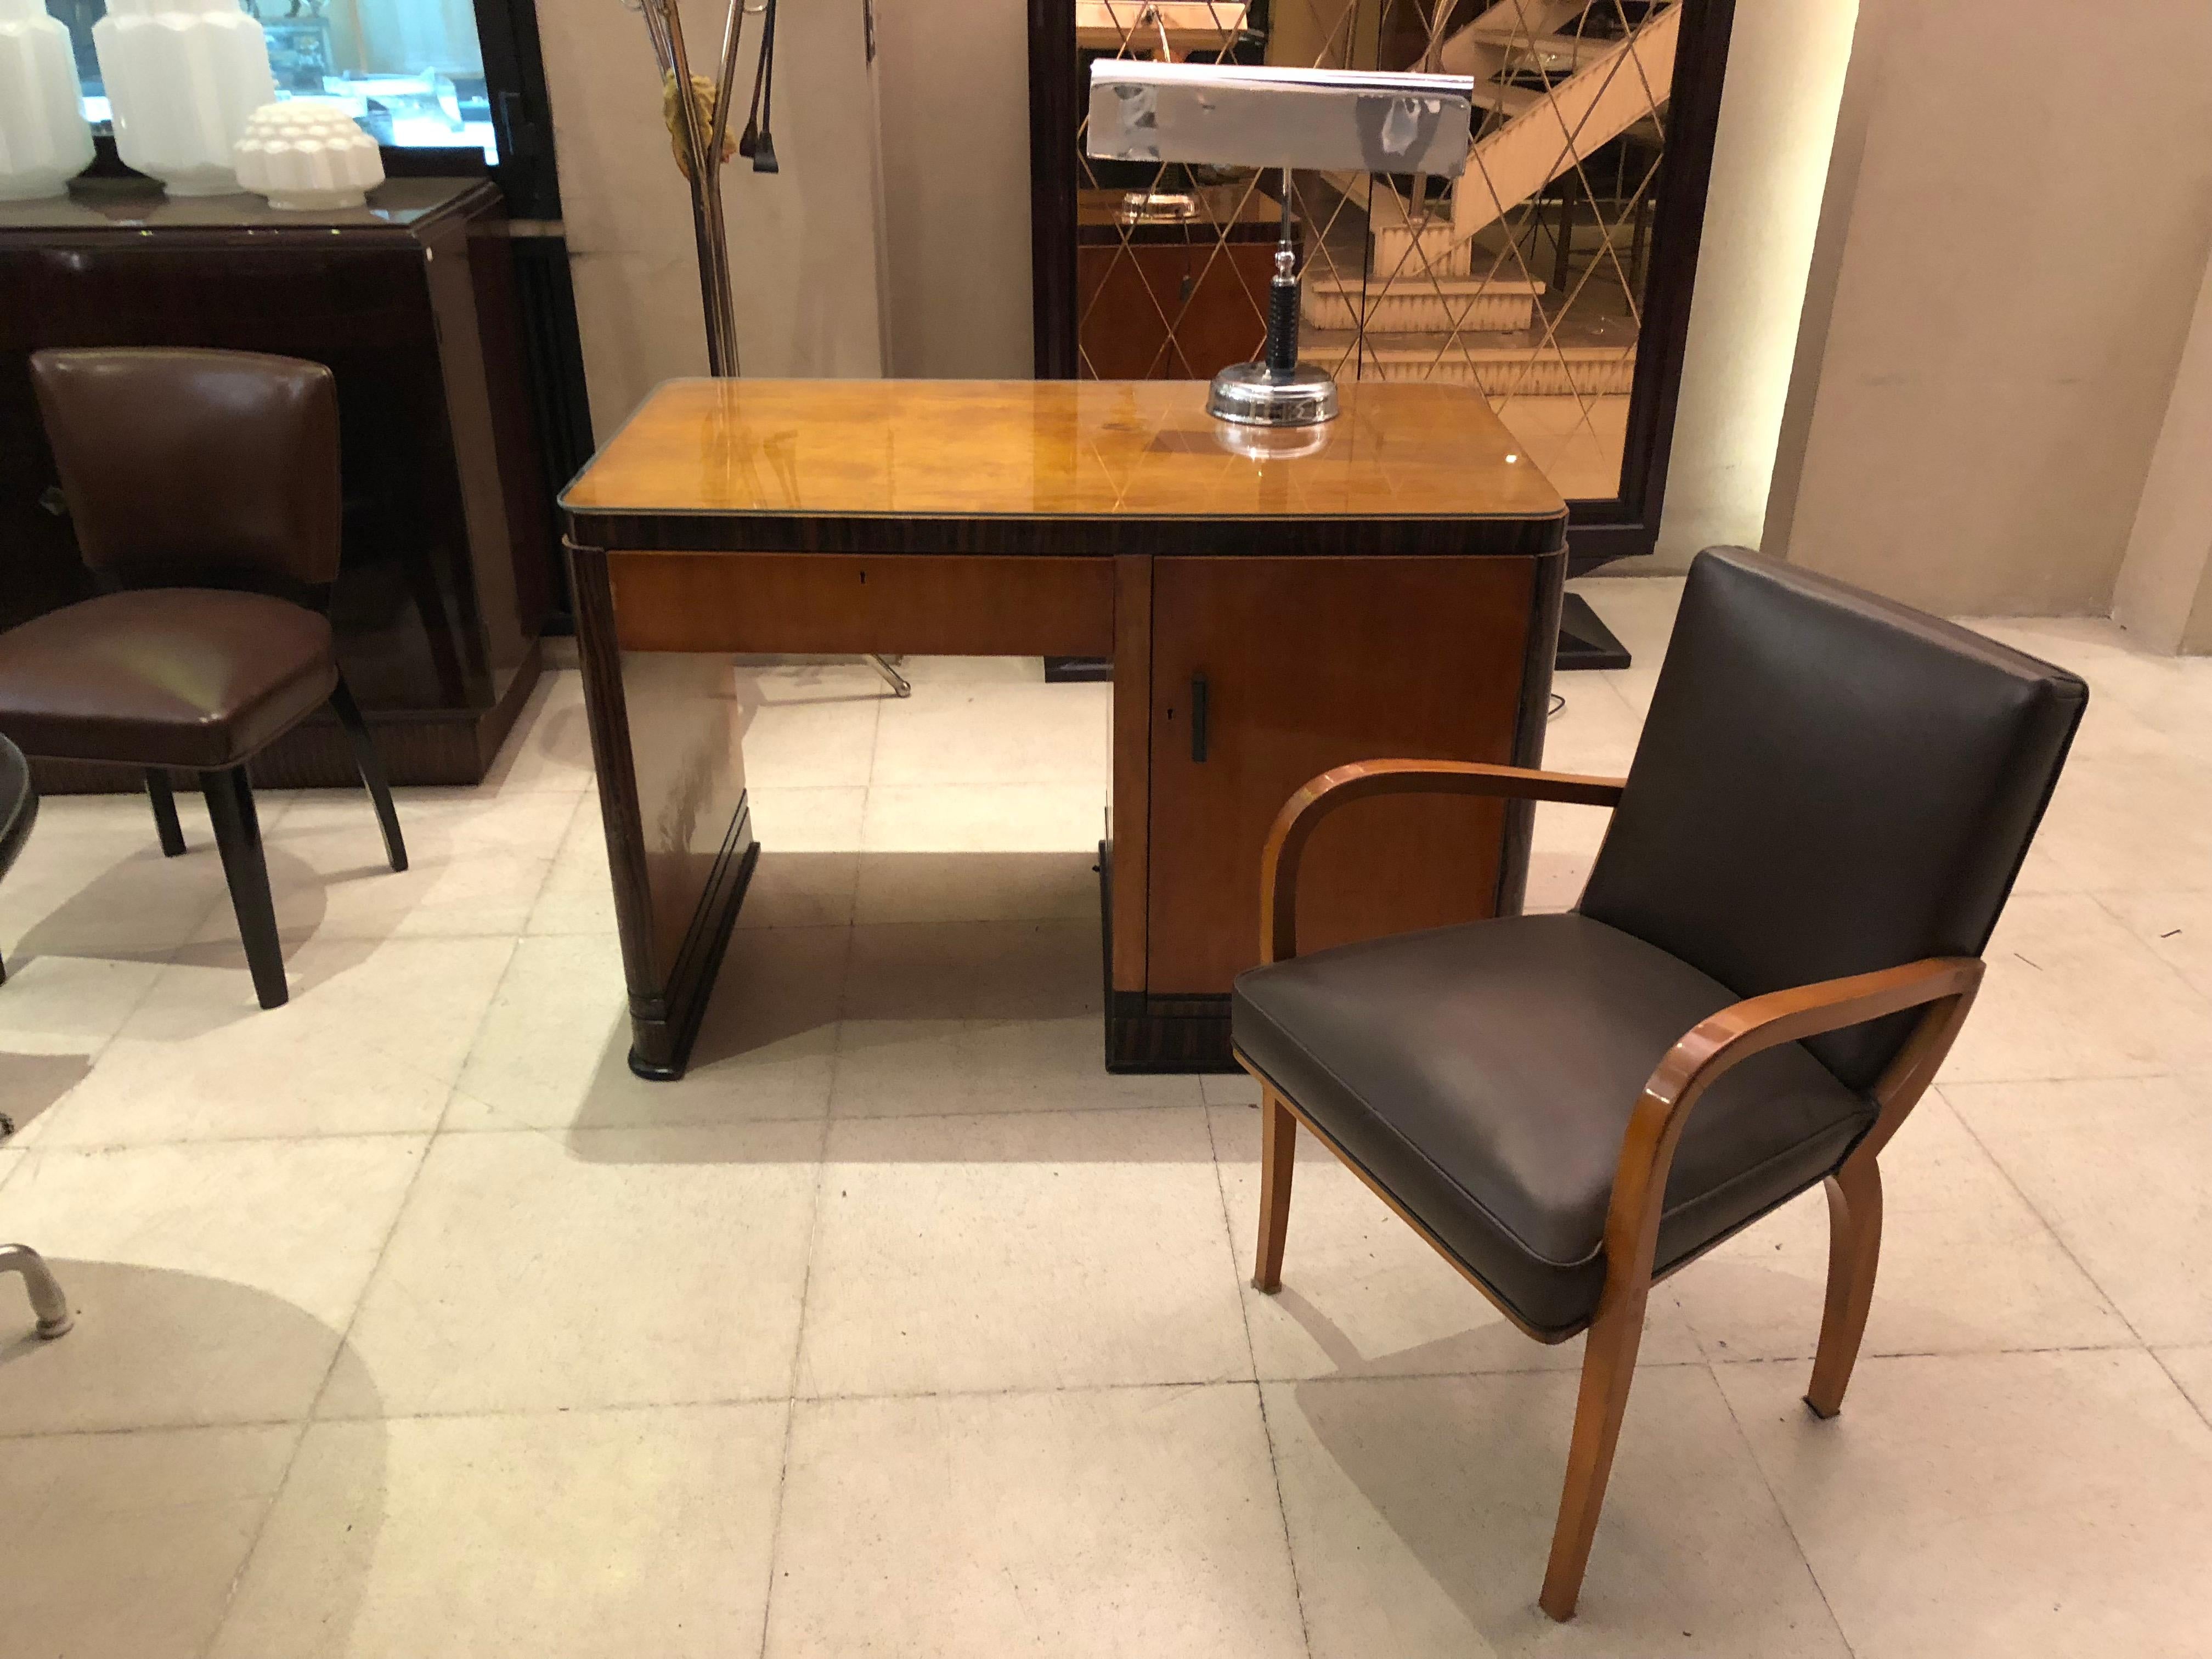 Art Deco Schreibtischstuhl

MATERIAL: Leder und Holz
Jahr: 1930
Land: Frankreich
Wenn Sie einen Schreibtischstuhl suchen, der zu Ihrem Schreibtisch passt, haben wir das Richtige für Sie. 
Wir haben uns seit 1982 auf den Verkauf von Art Deco, Art